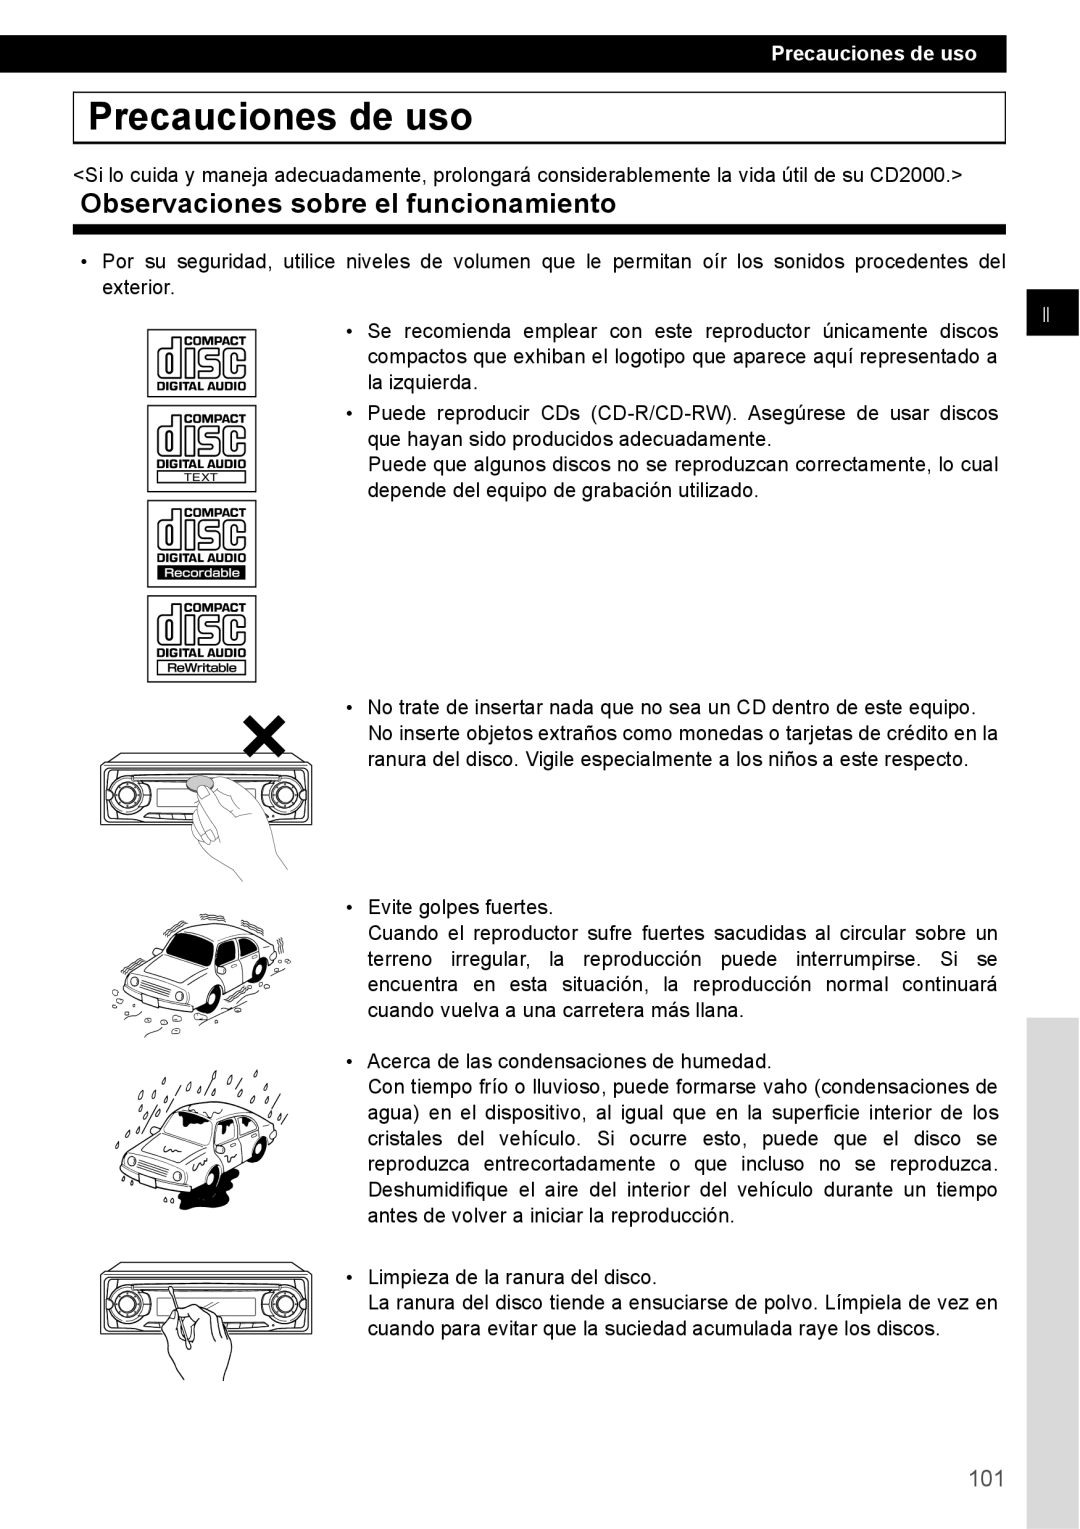 Eclipse - Fujitsu Ten CD2000 manual Precauciones de uso, Observaciones sobre el funcionamiento 